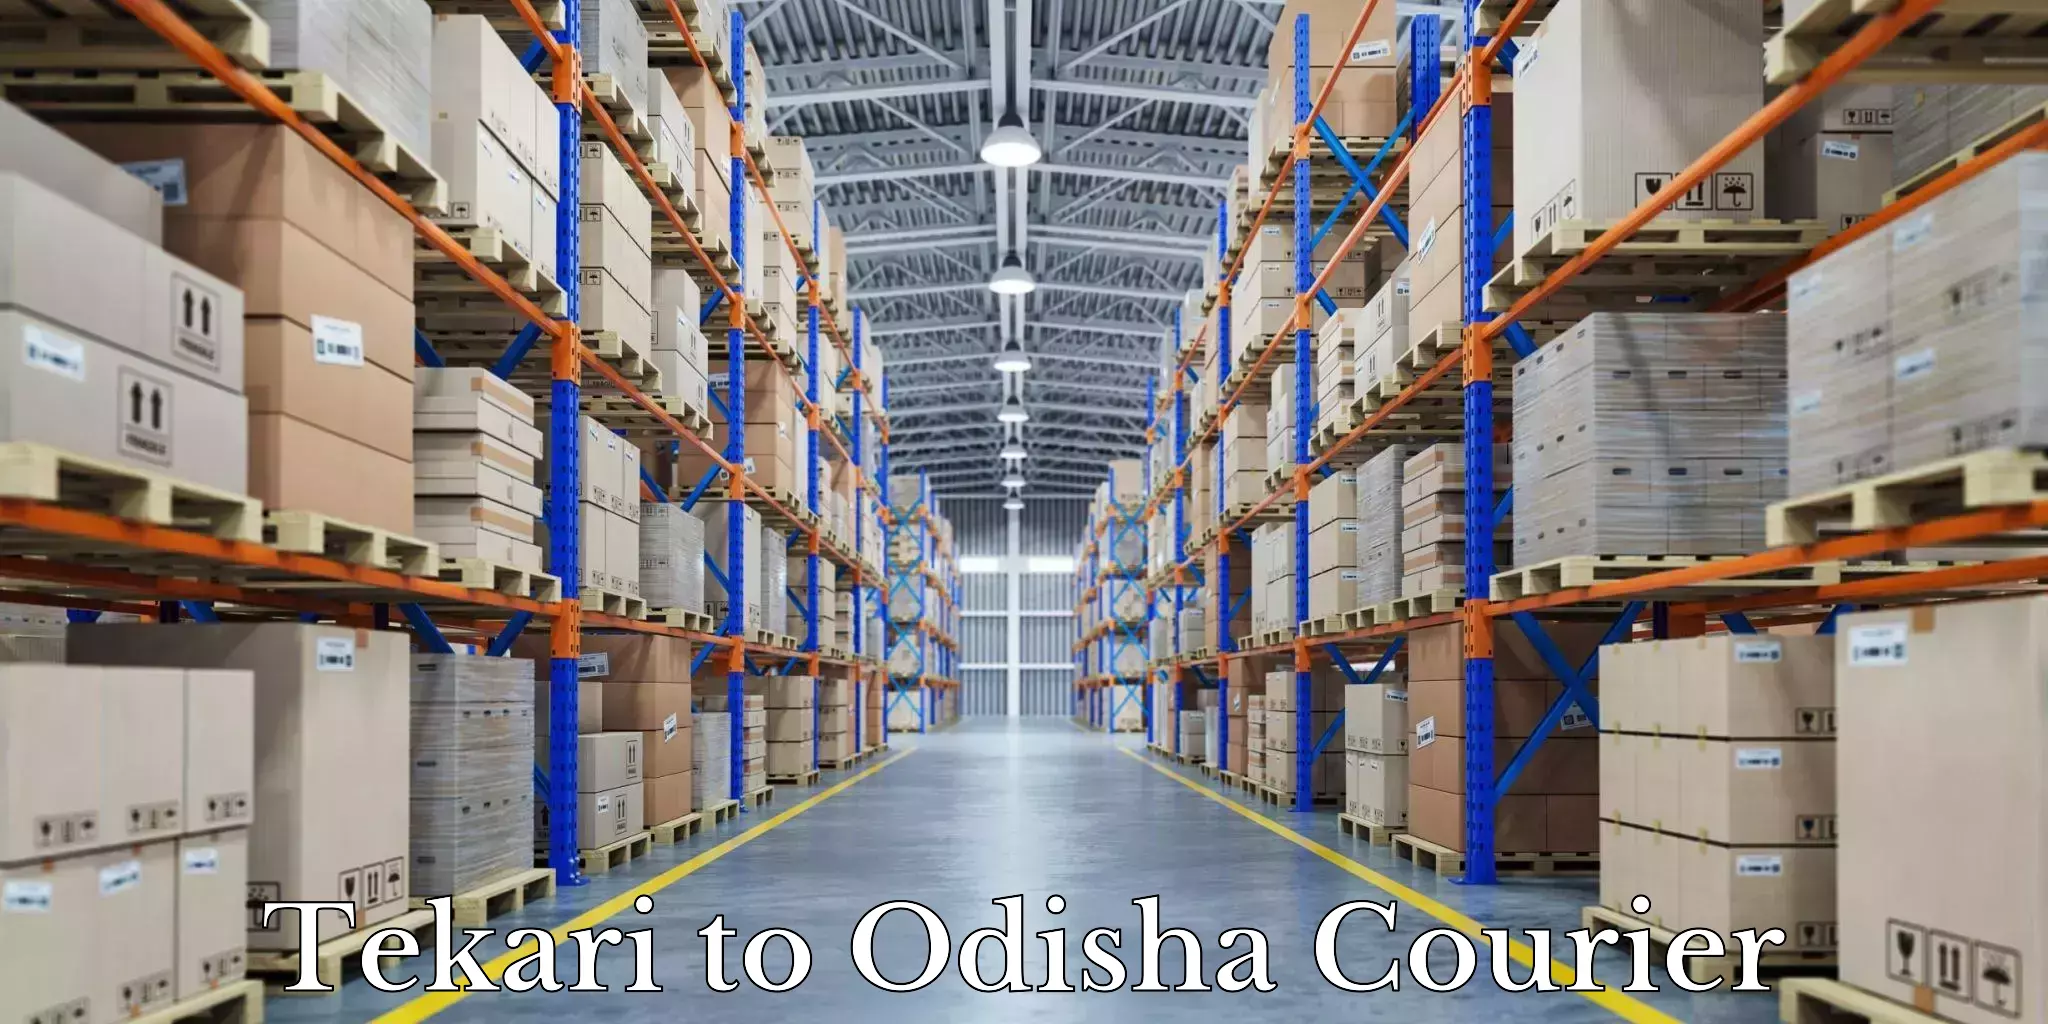 Budget-friendly movers Tekari to Odisha